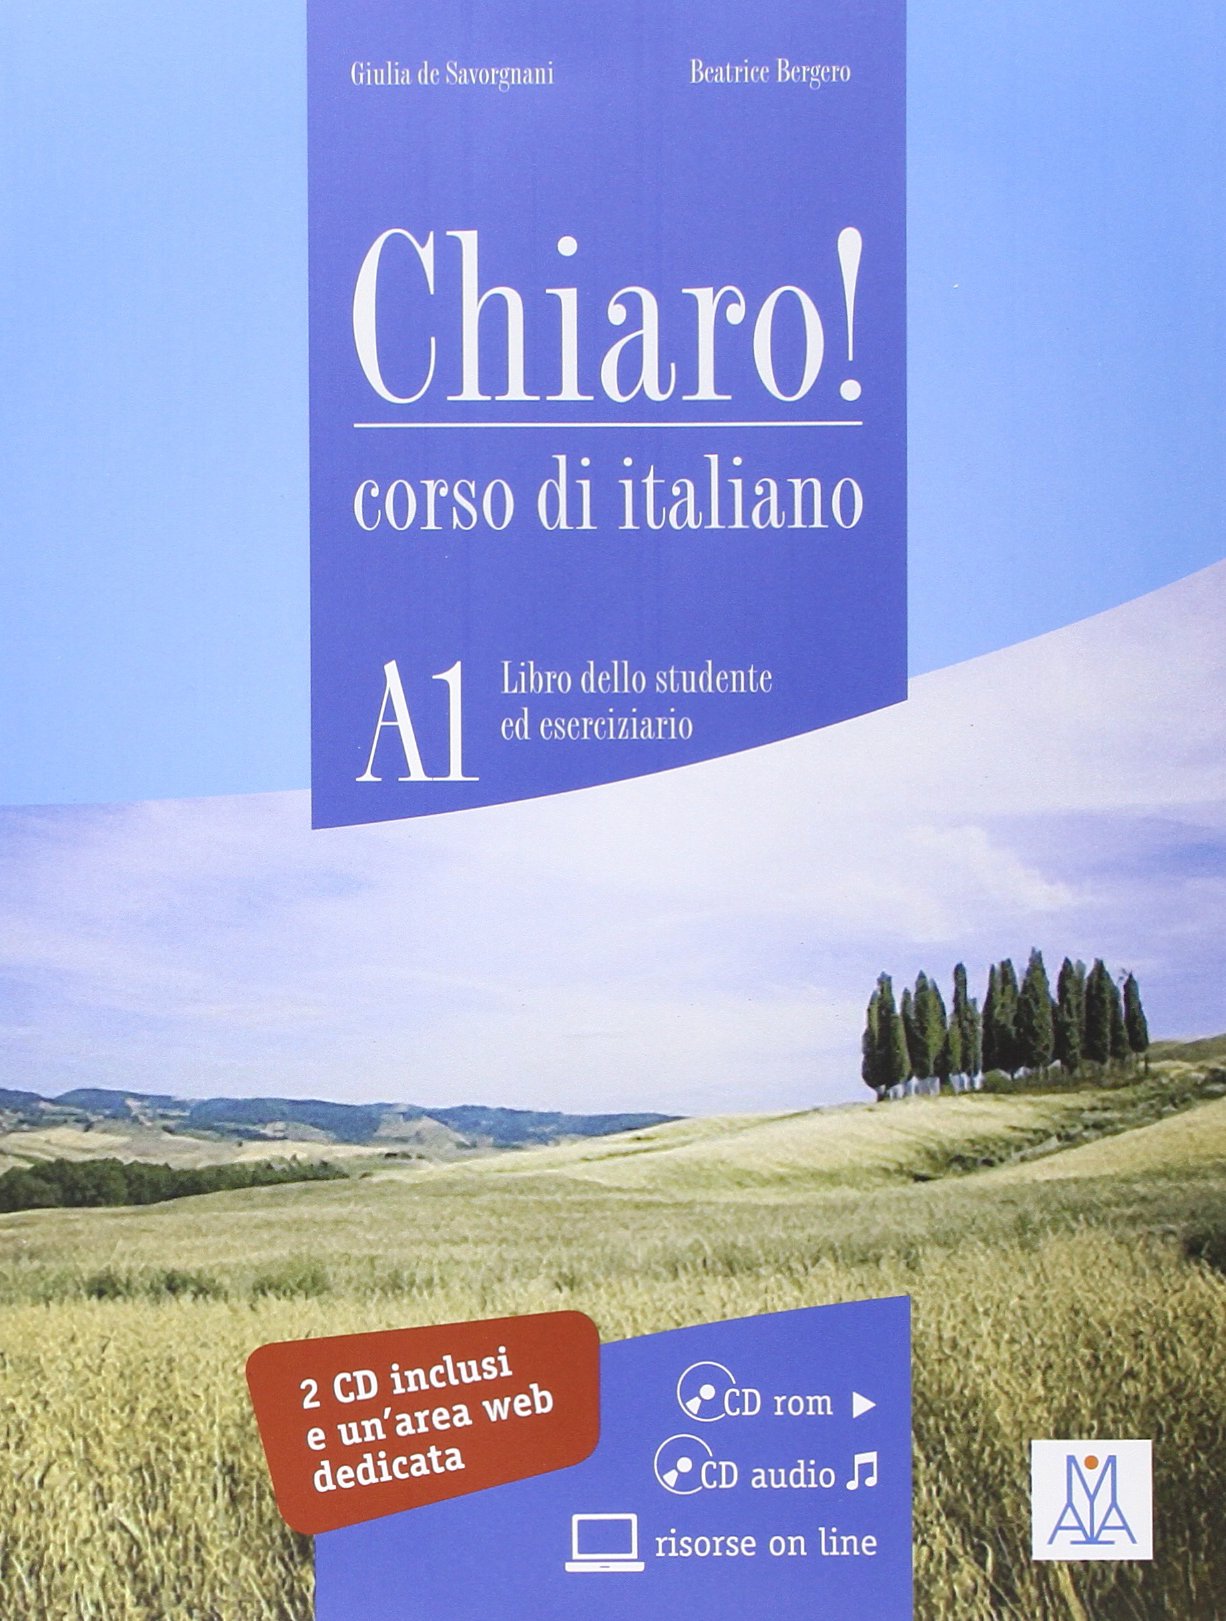 CHIARO! A1 Libro dello studente ed eserciziario + CD-ROM + CD audio